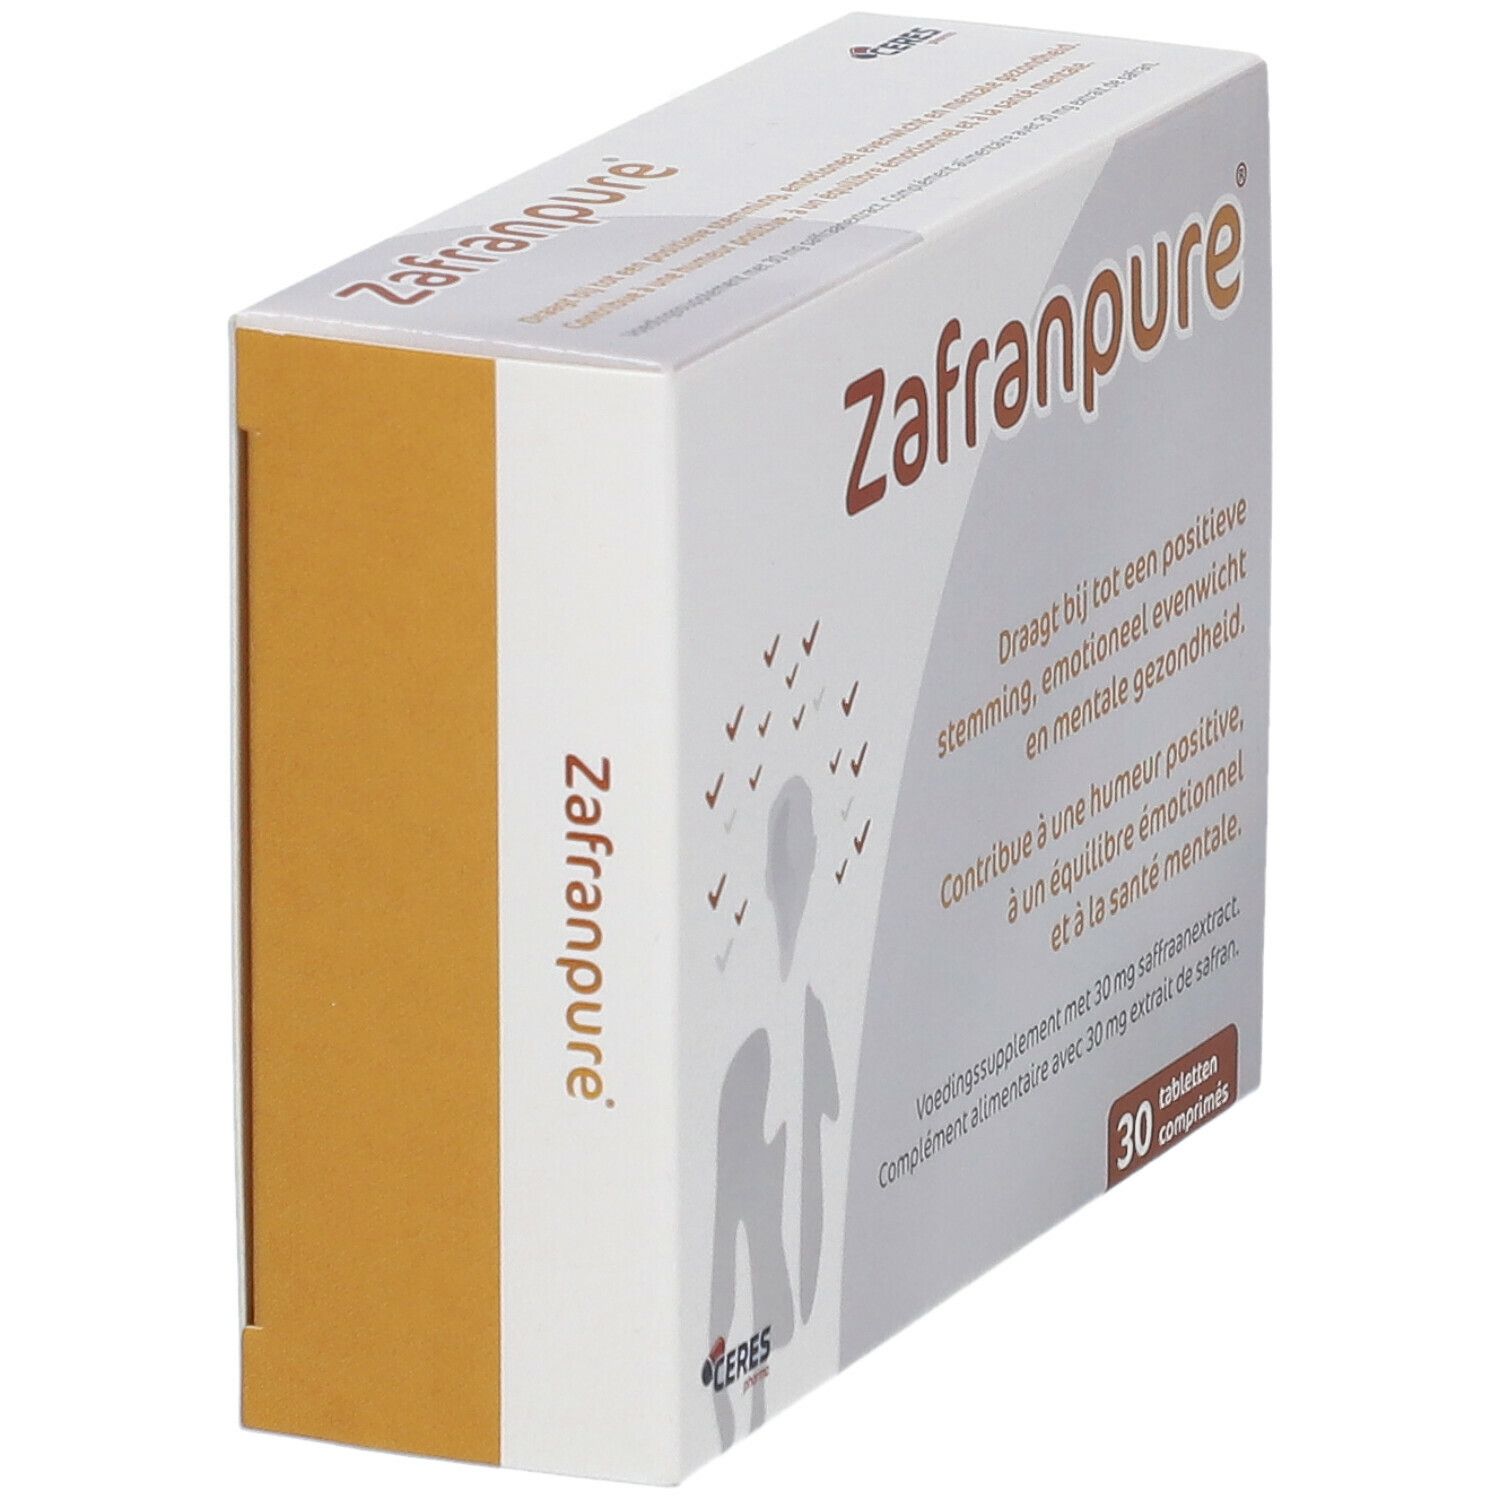 ZafranPure - Positieve Stemming, Emotioneel Evenwicht en Mentale Energie